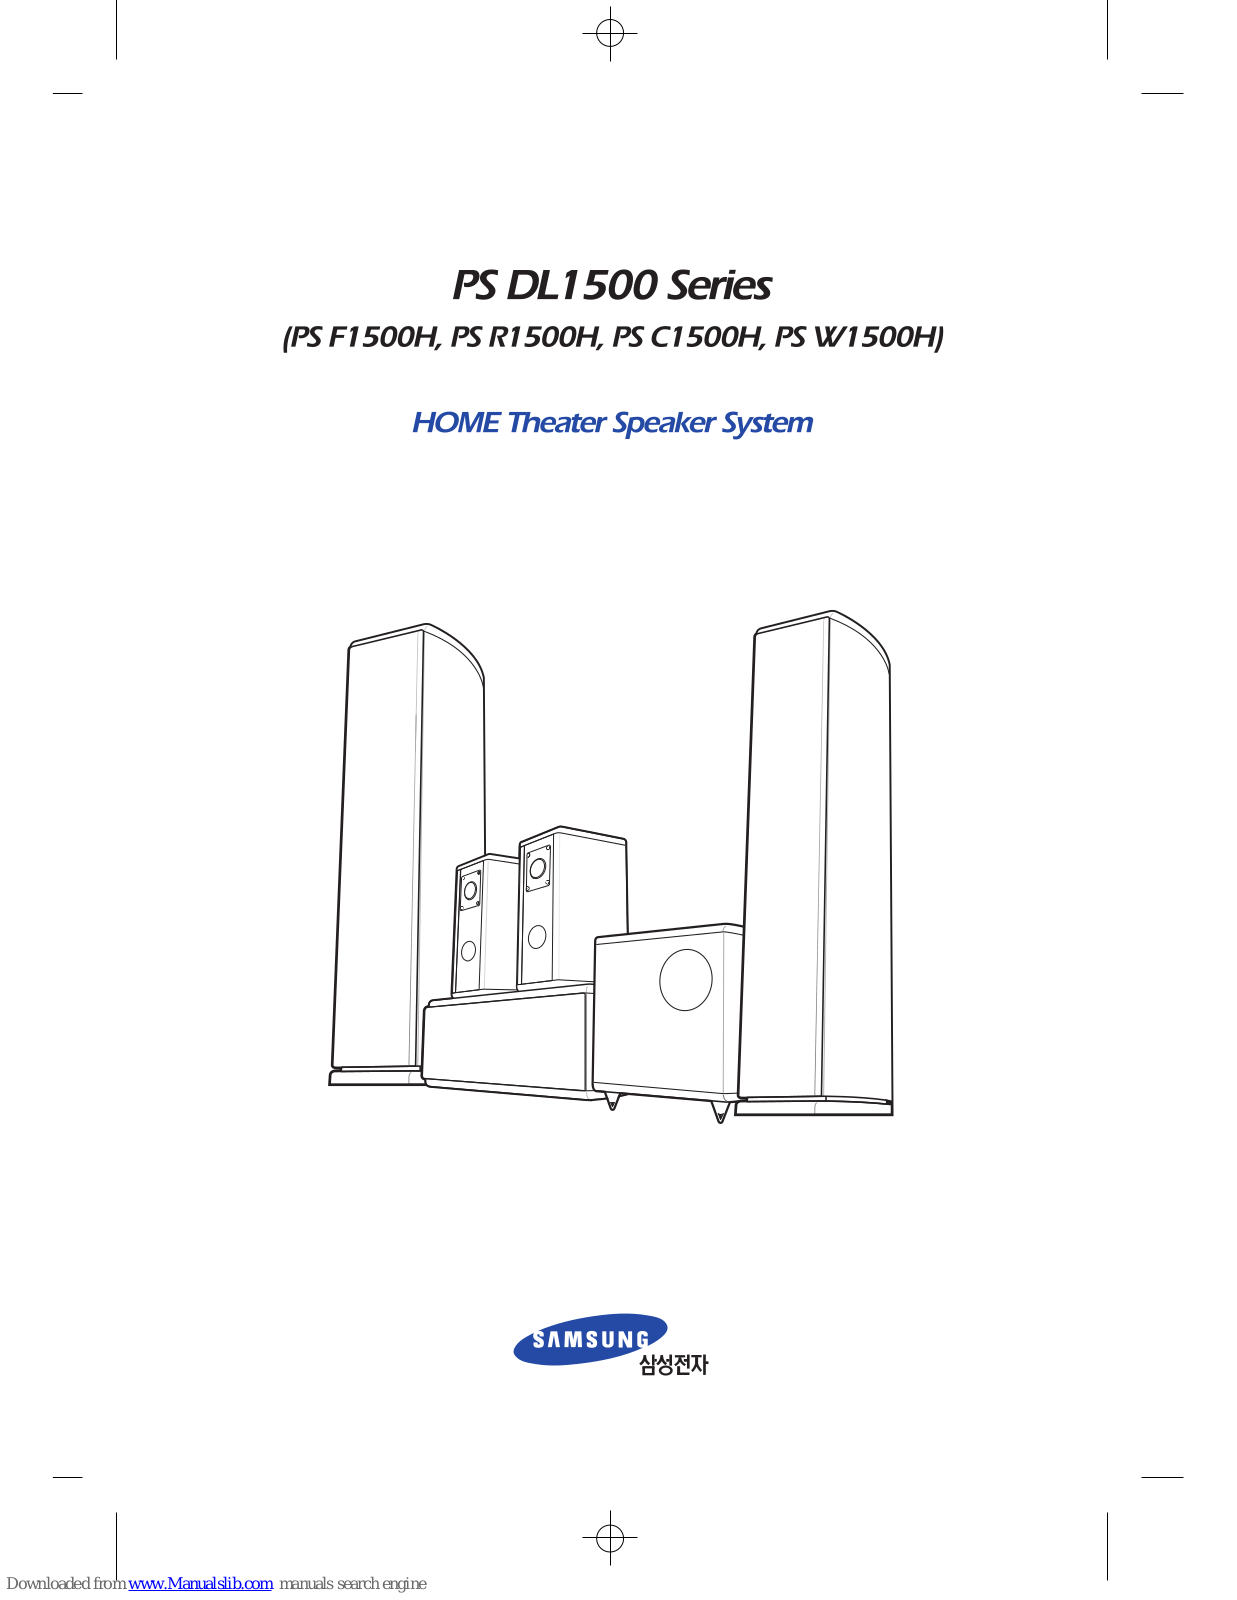 Samsung PS-C1500H, PS-DL1500, PSF1500H, PSR1500H, PSW1500H User Manual